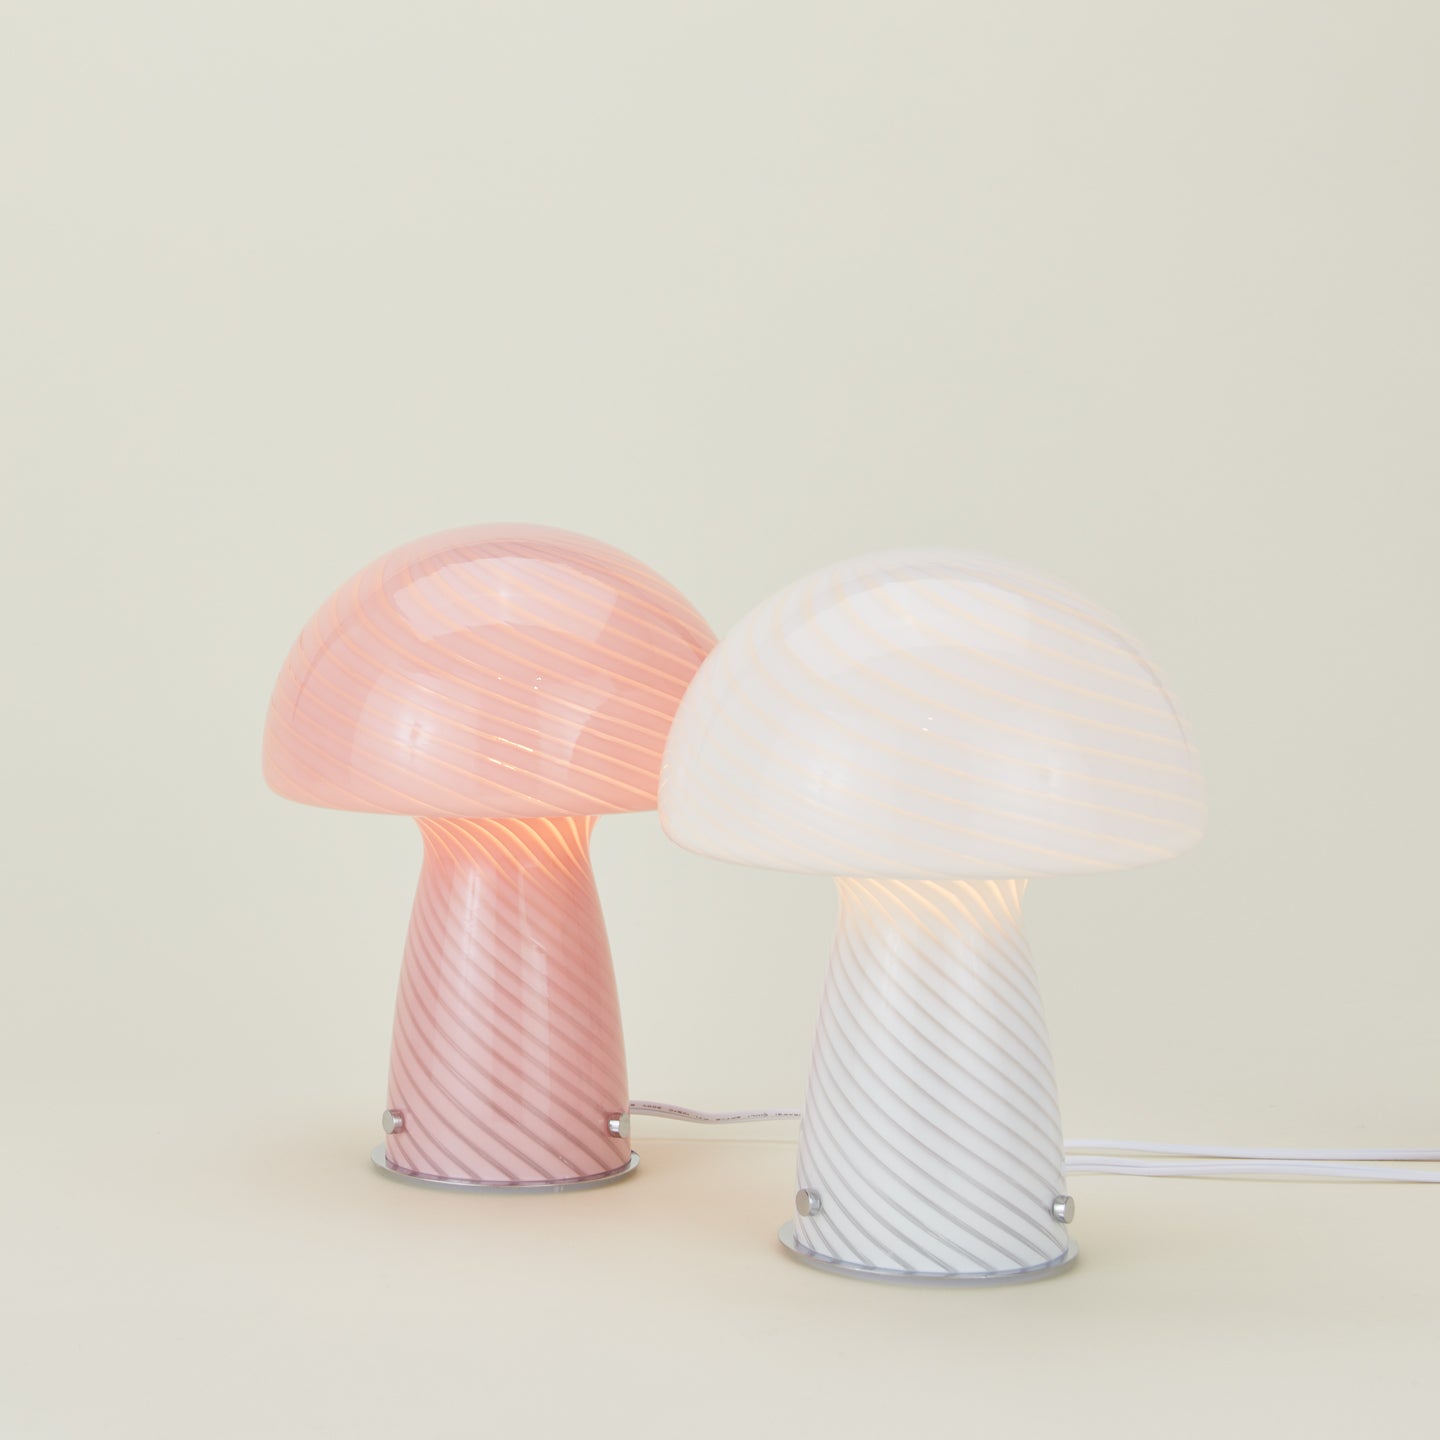 Glass Tall Mushroom Lamp - White